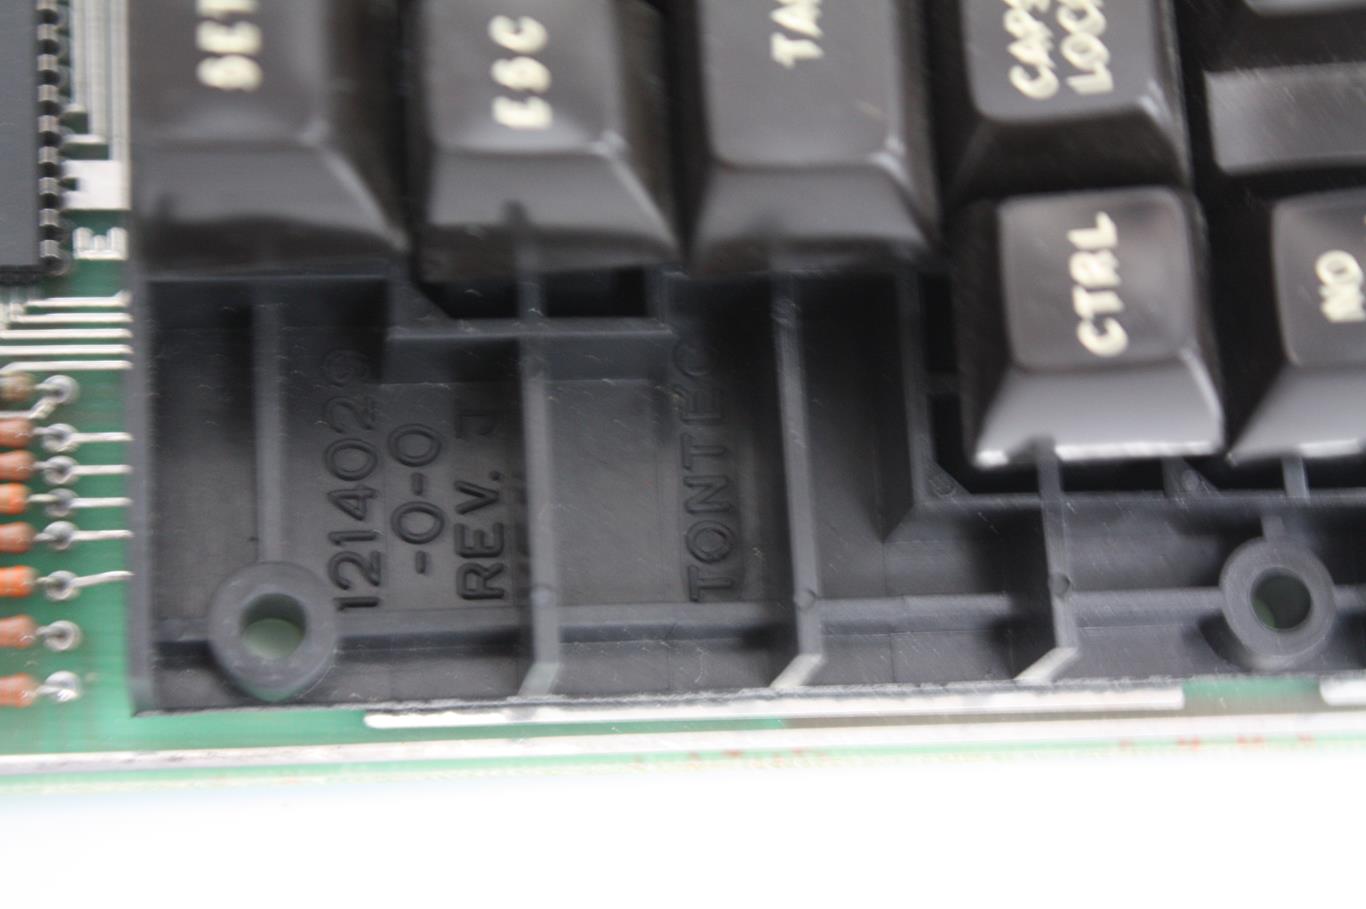 DEC VT100 - keyboard moulding mark